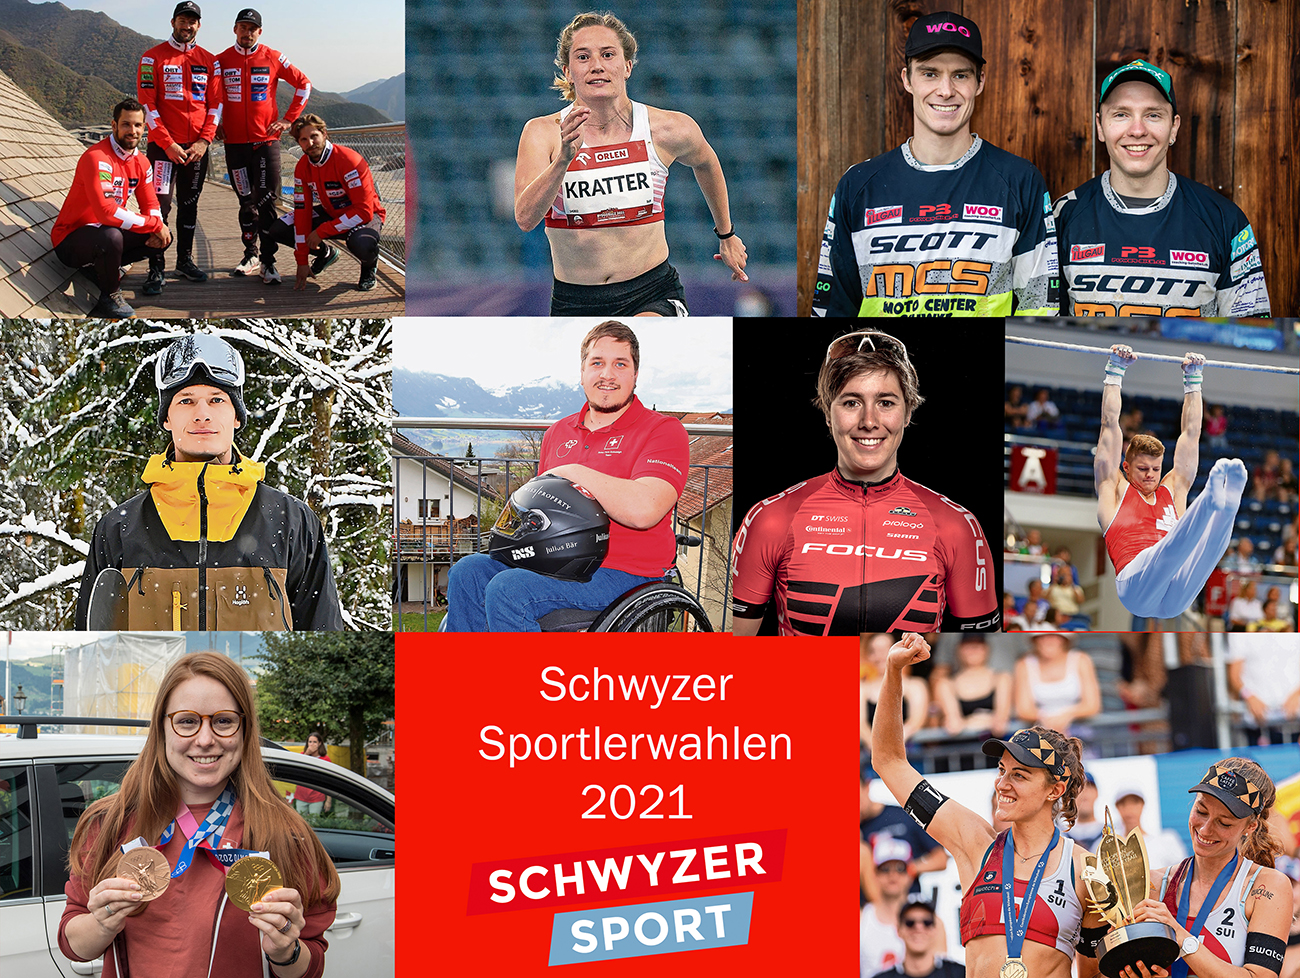 Schwyzer Sportlerwahlen 2021